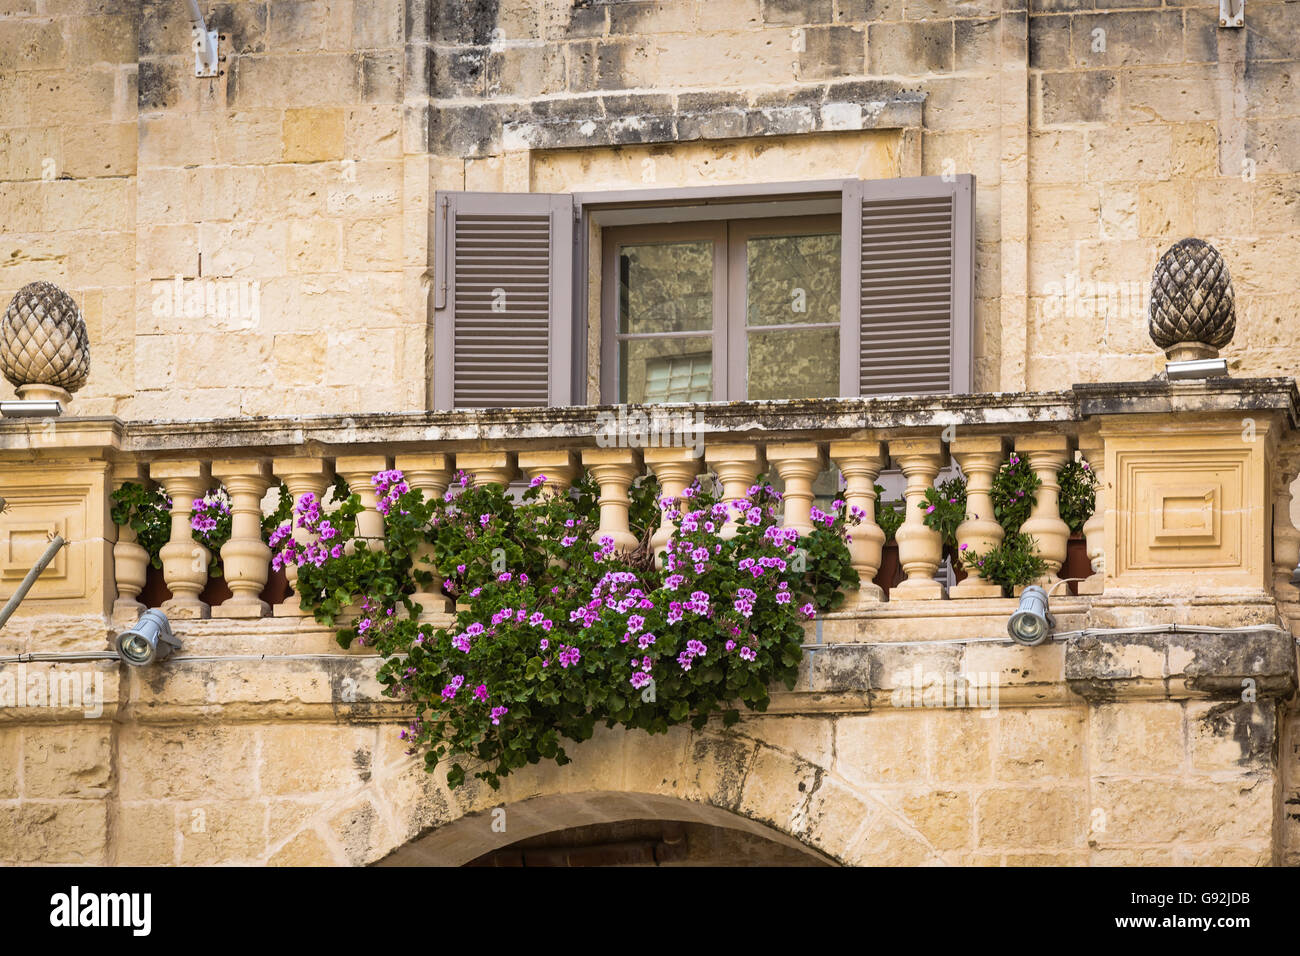 Details zu den stillen Gassen der Altstadt Mdina, Malta - alte Hauptstadt und der Stille von Malta - mittelalterliche Stadt Stockfoto